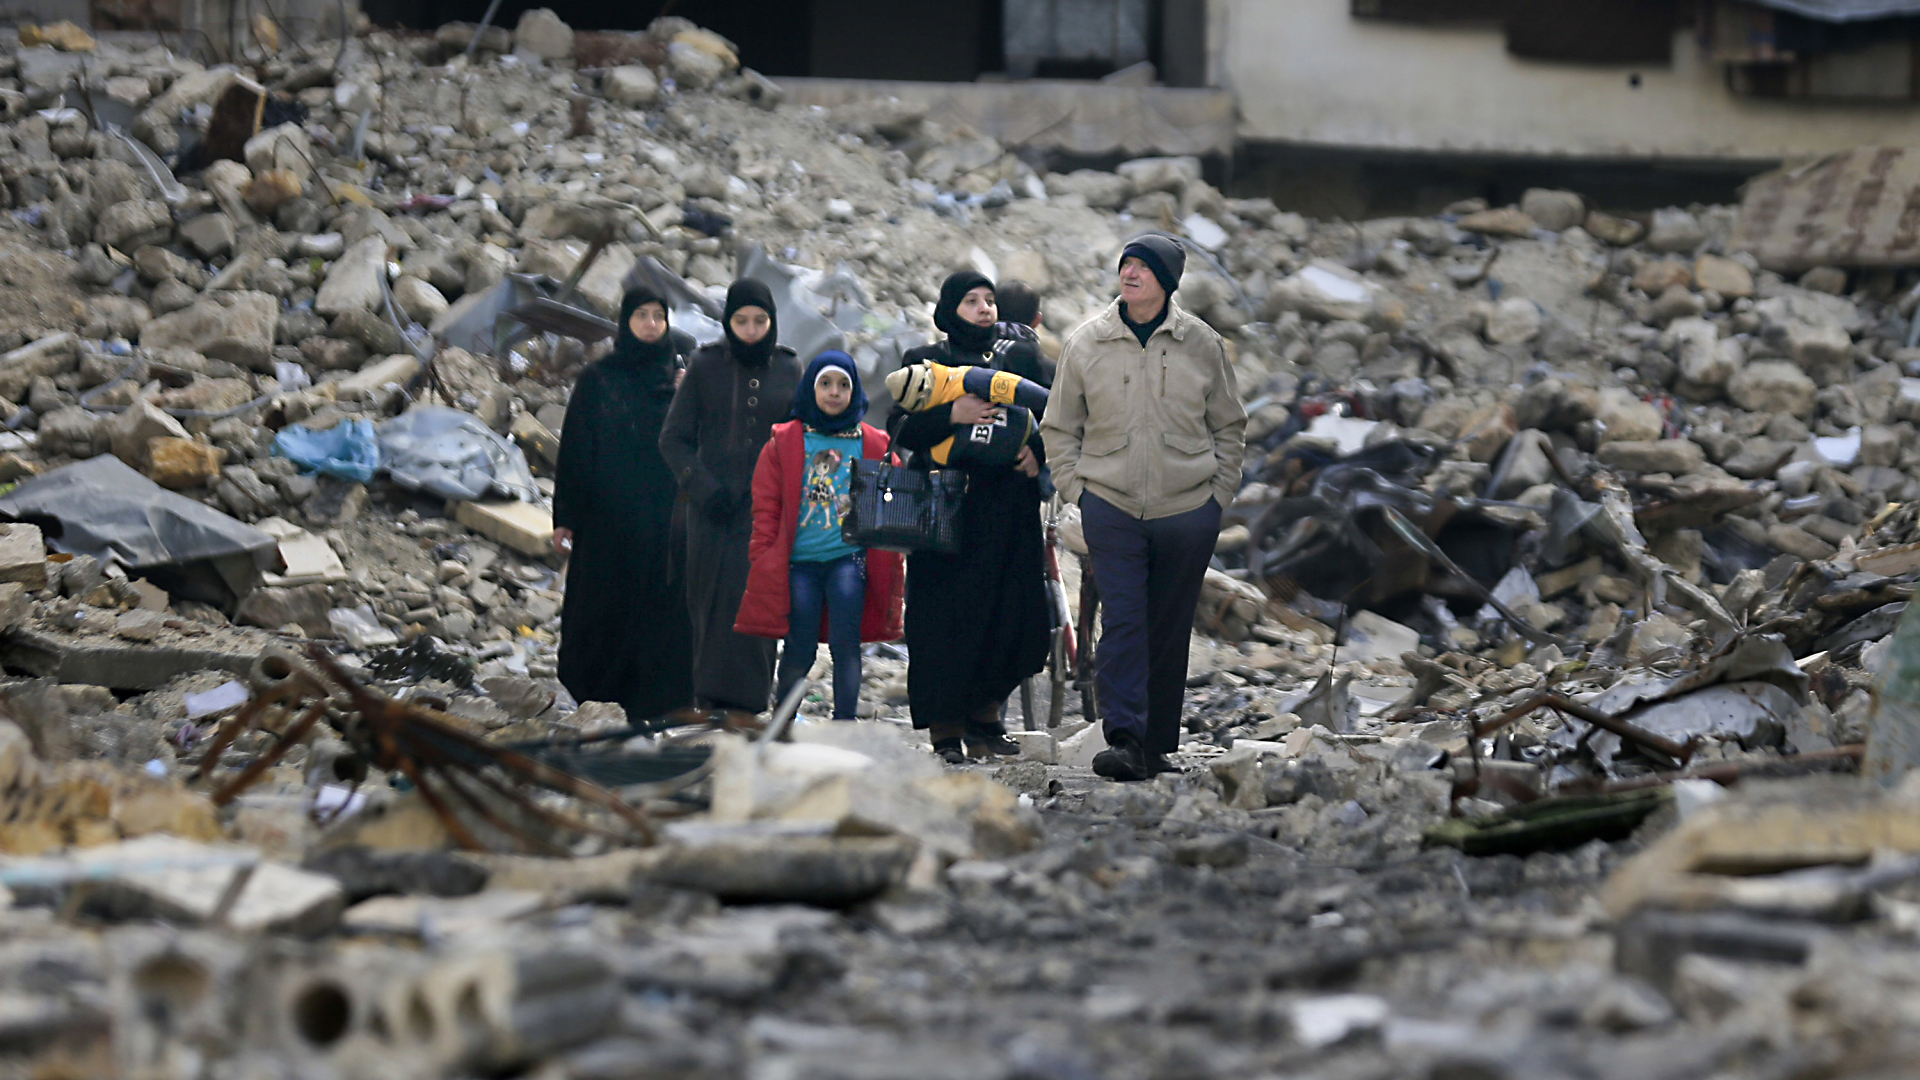 Anfang des Jahres in Aleppo. Eine Gruppe von Menschen betrachtet die Zerstörungen in der Stadt. | dpa